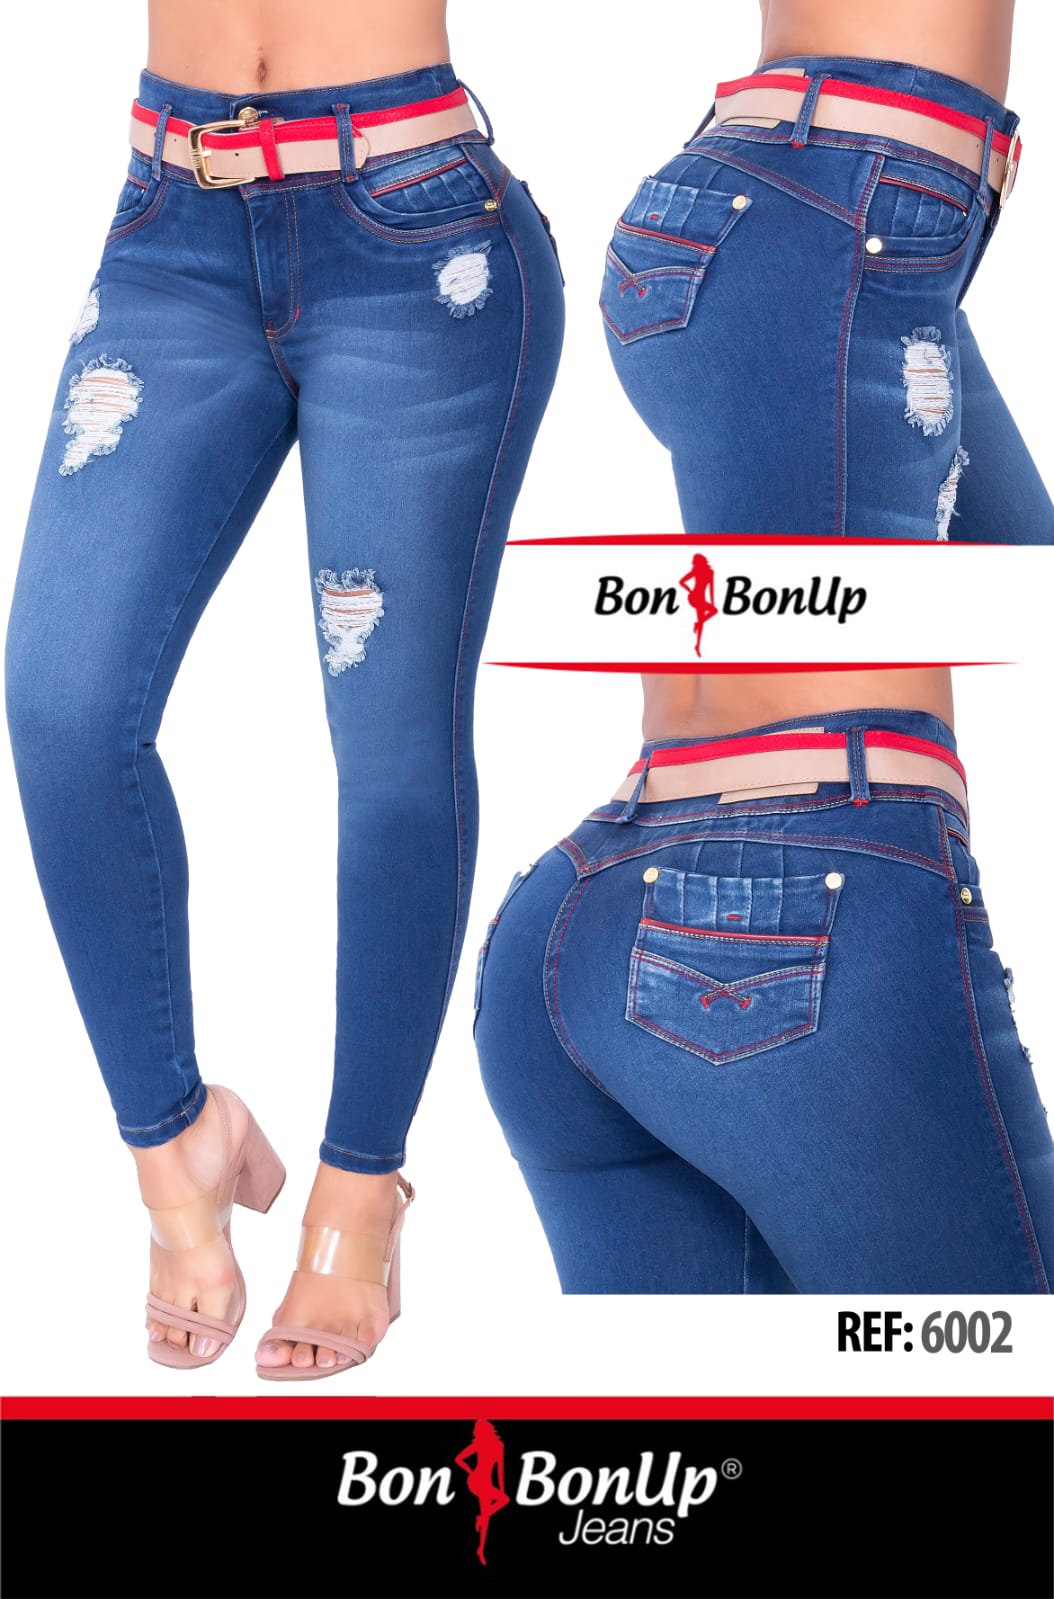 6002 BonBonUp Jeans